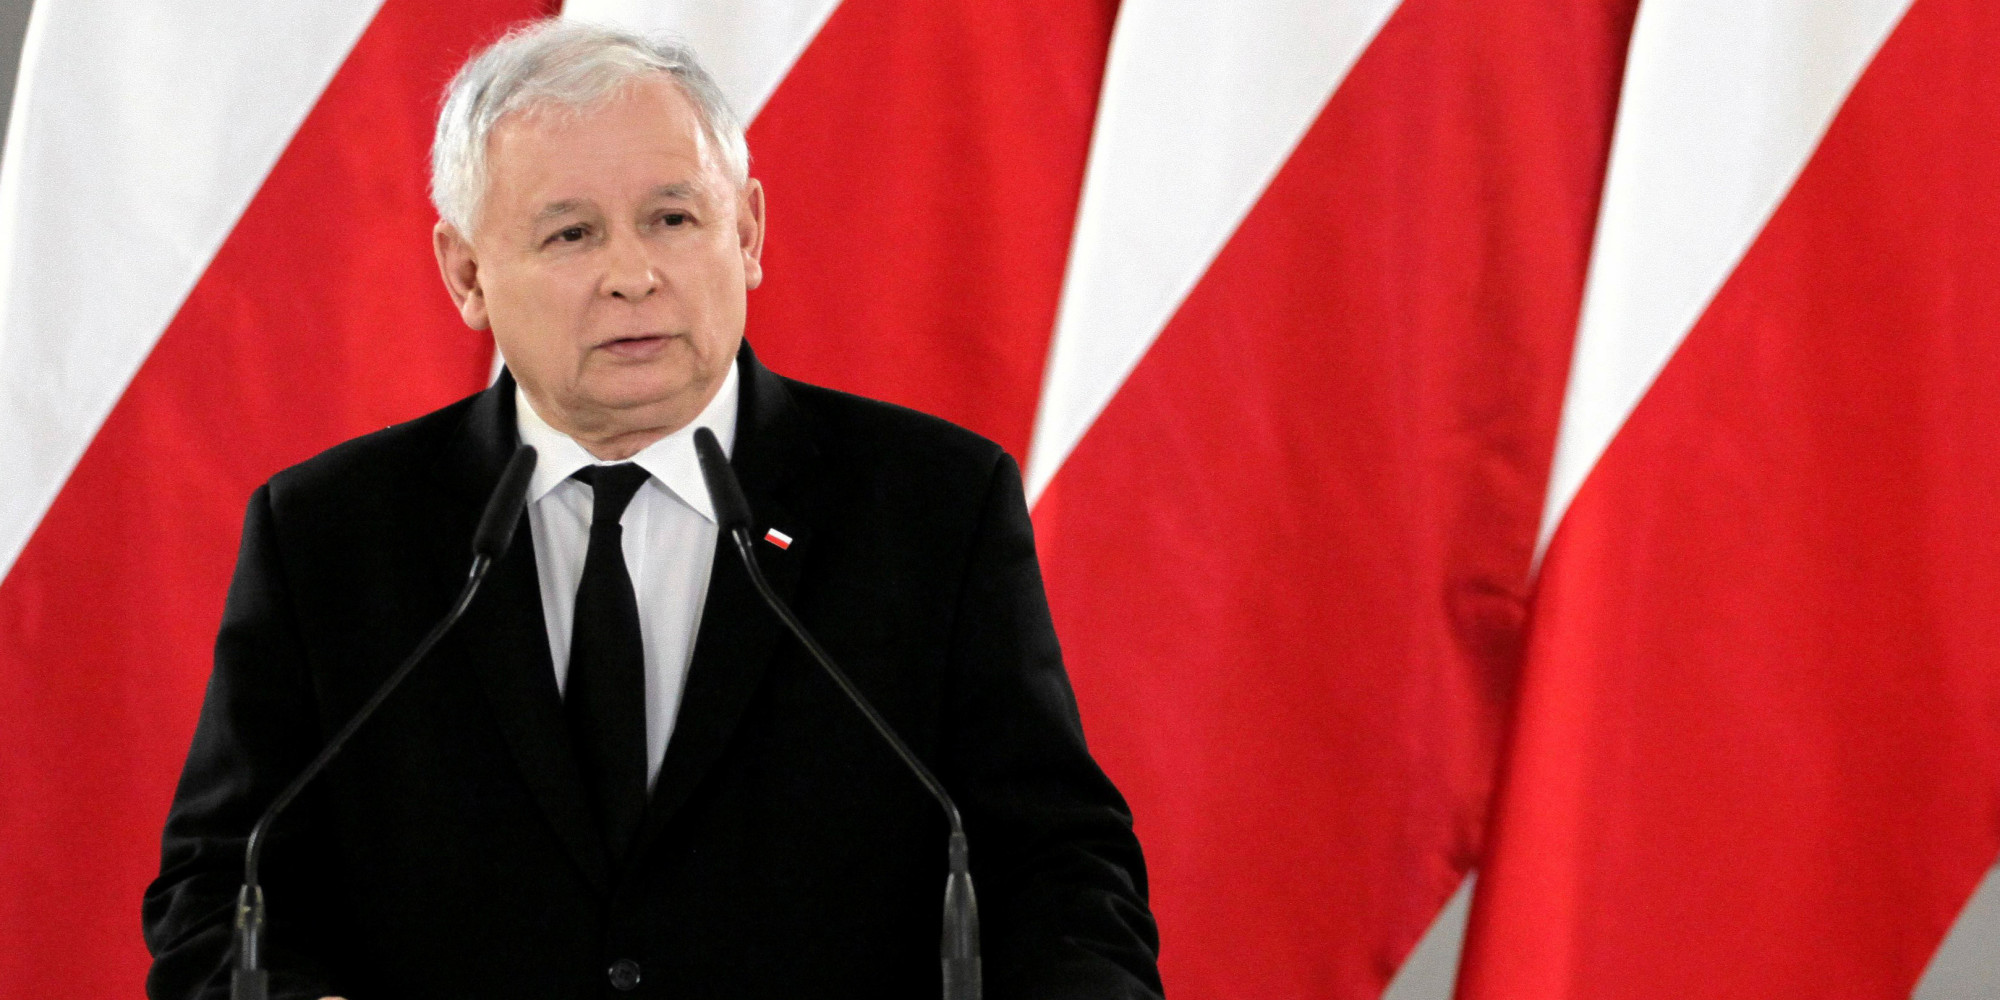 Ο αρχηγός κυβερνώντος κόμματος Πολωνίας κατά Γερμανίας: «Με την ειρήνη προσπαθεί όσα απέτυχε με τον πόλεμο»